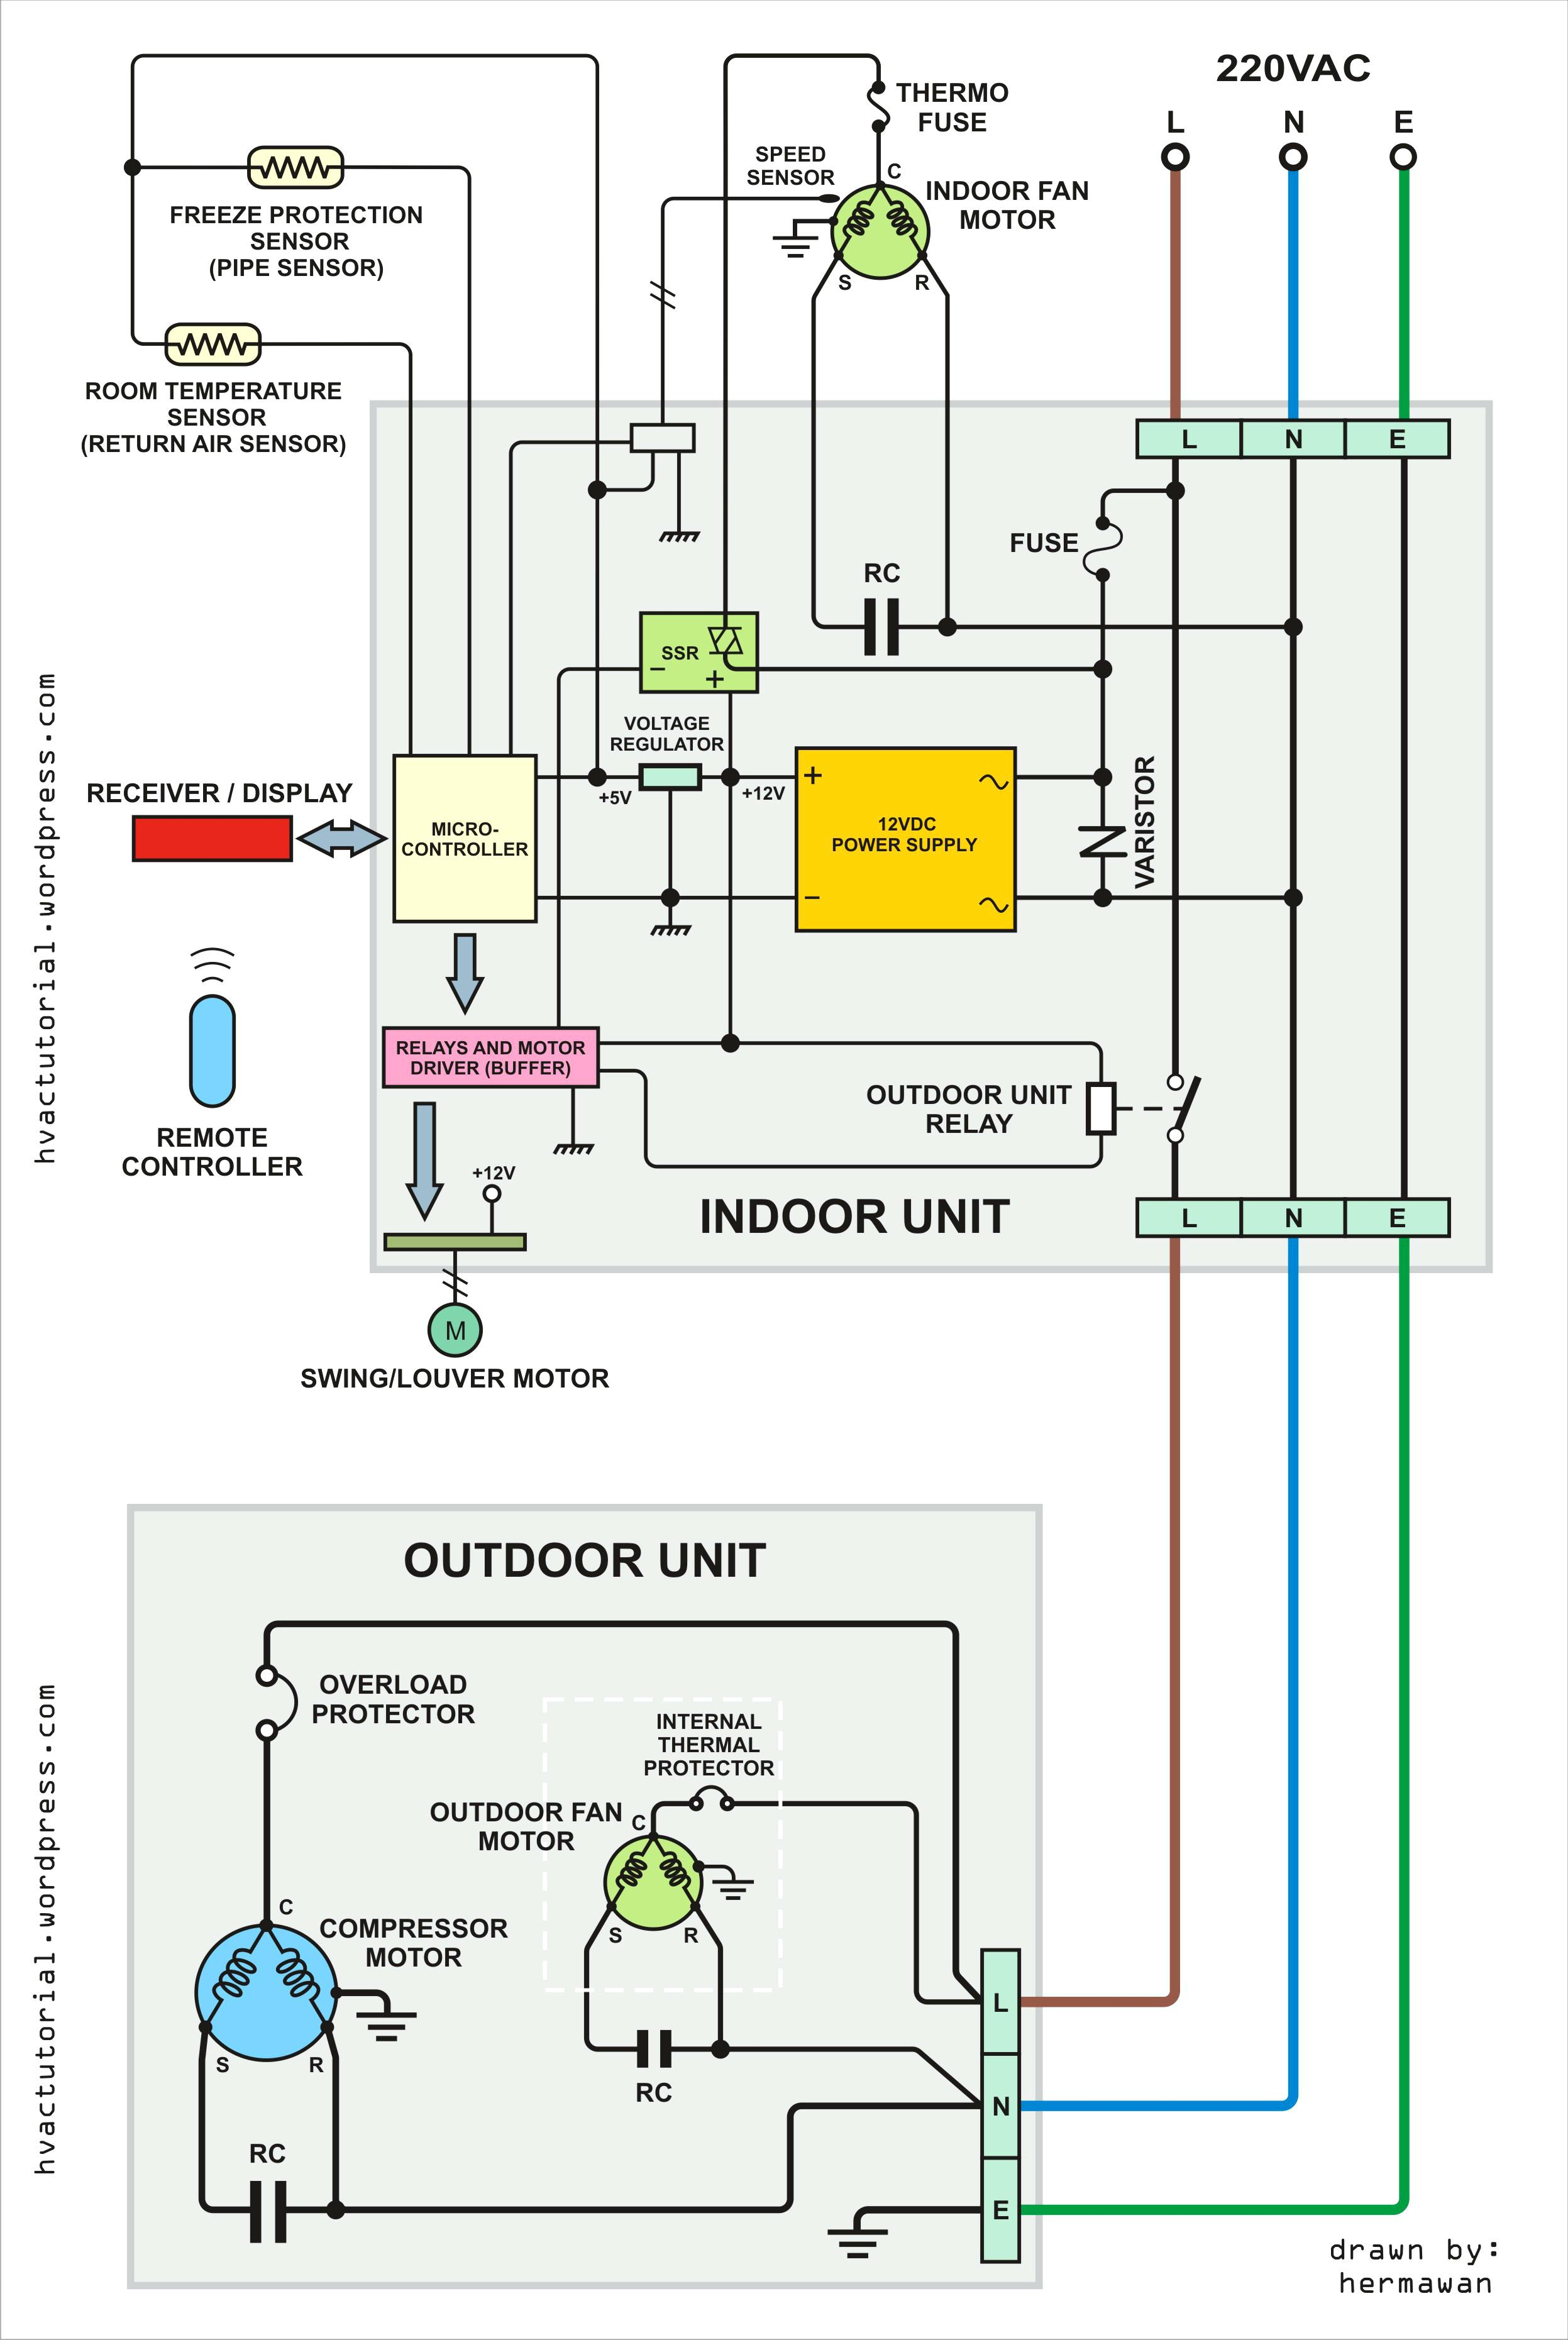 Basic Furnace Wiring Diagram - Data Wiring Diagram Schematic - Furnace Wiring Diagram